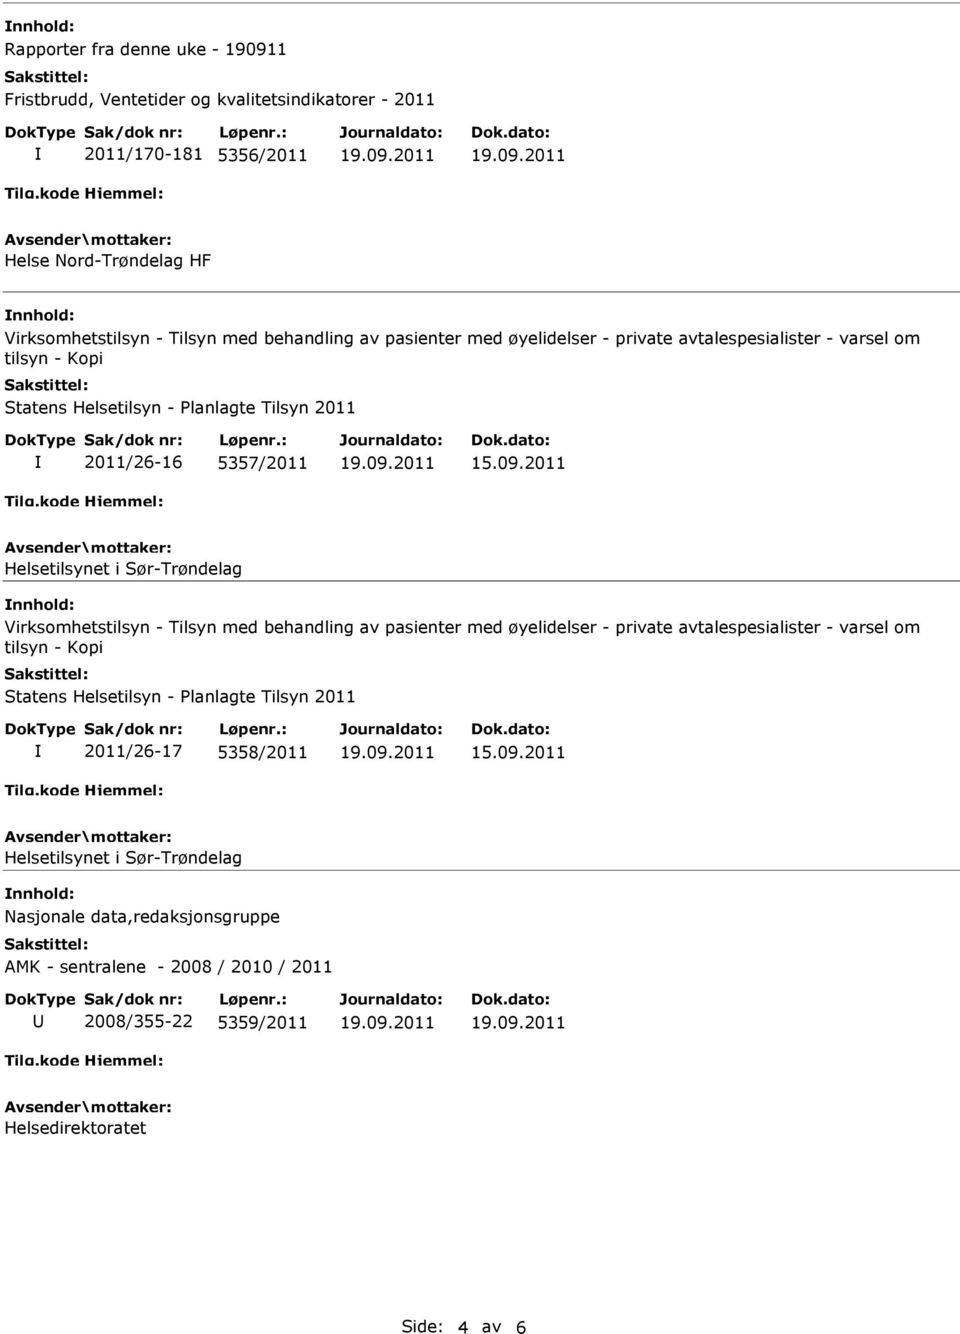 Tilsyn med behandling av pasienter med øyelidelser - private avtalespesialister - varsel om tilsyn - Kopi Statens Helsetilsyn - Planlagte Tilsyn 2011 2011/26-17